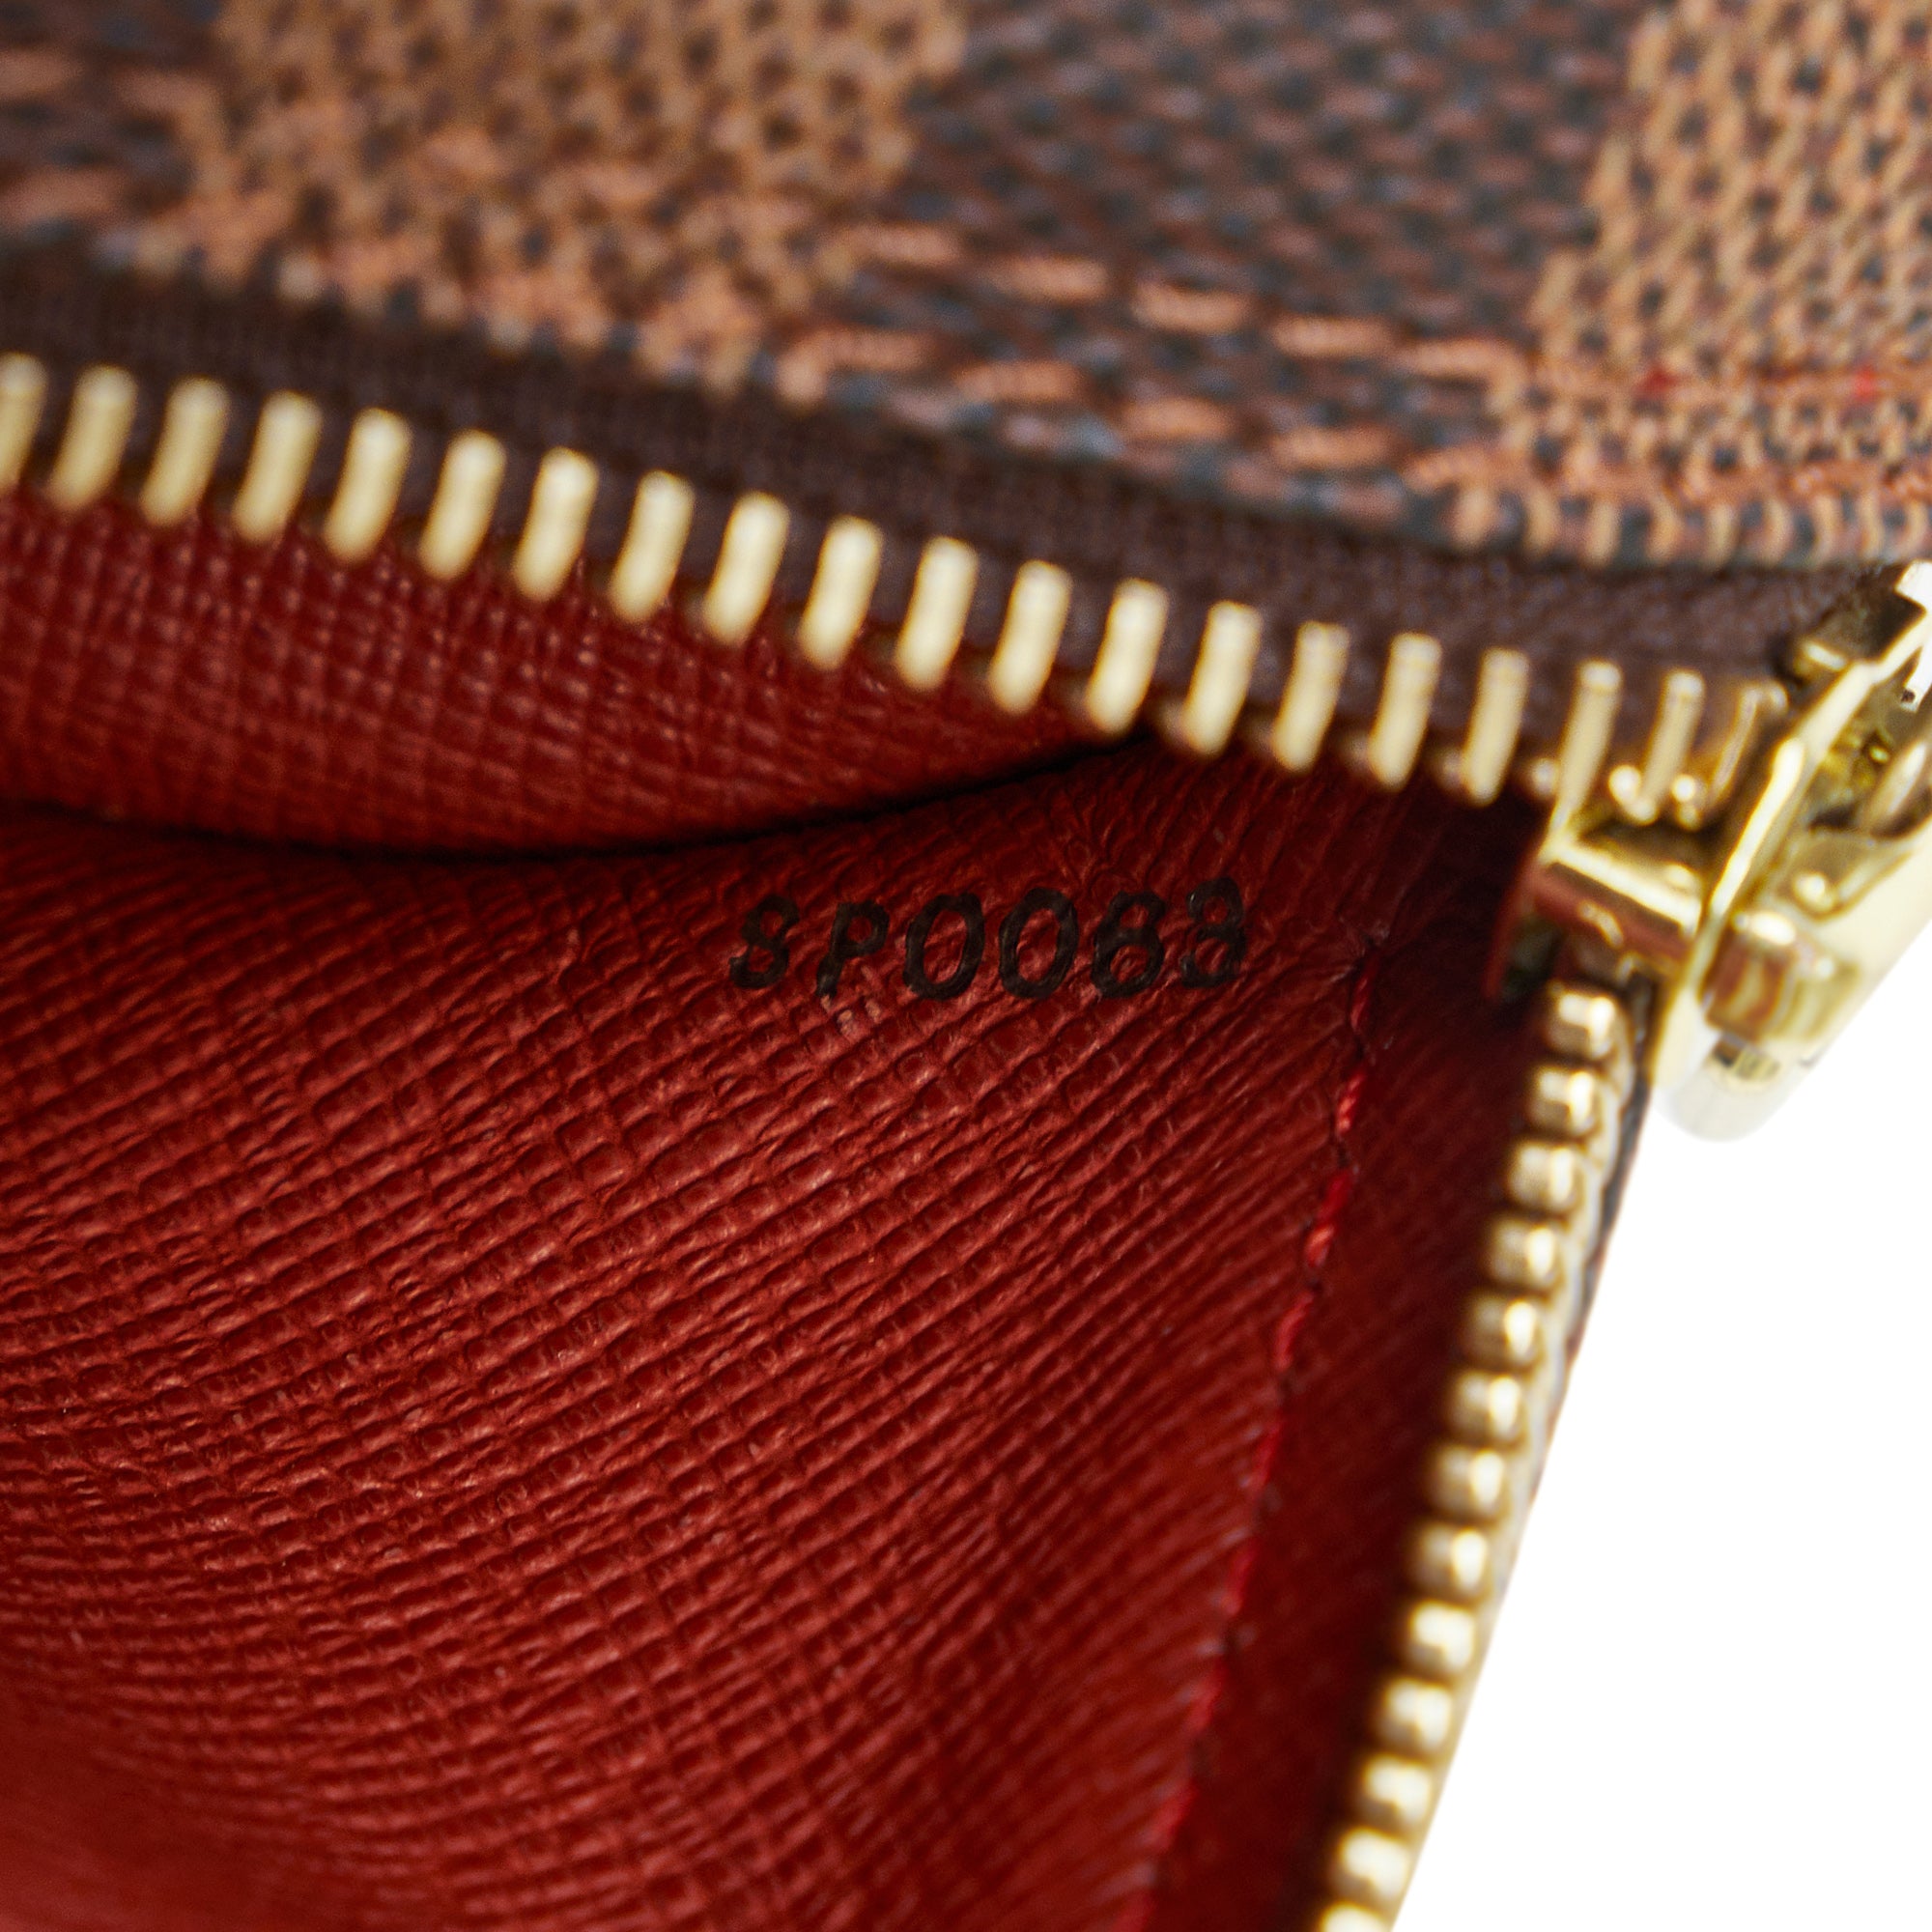 Brown Louis Vuitton Damier Ebene Papillon 28 Handbag